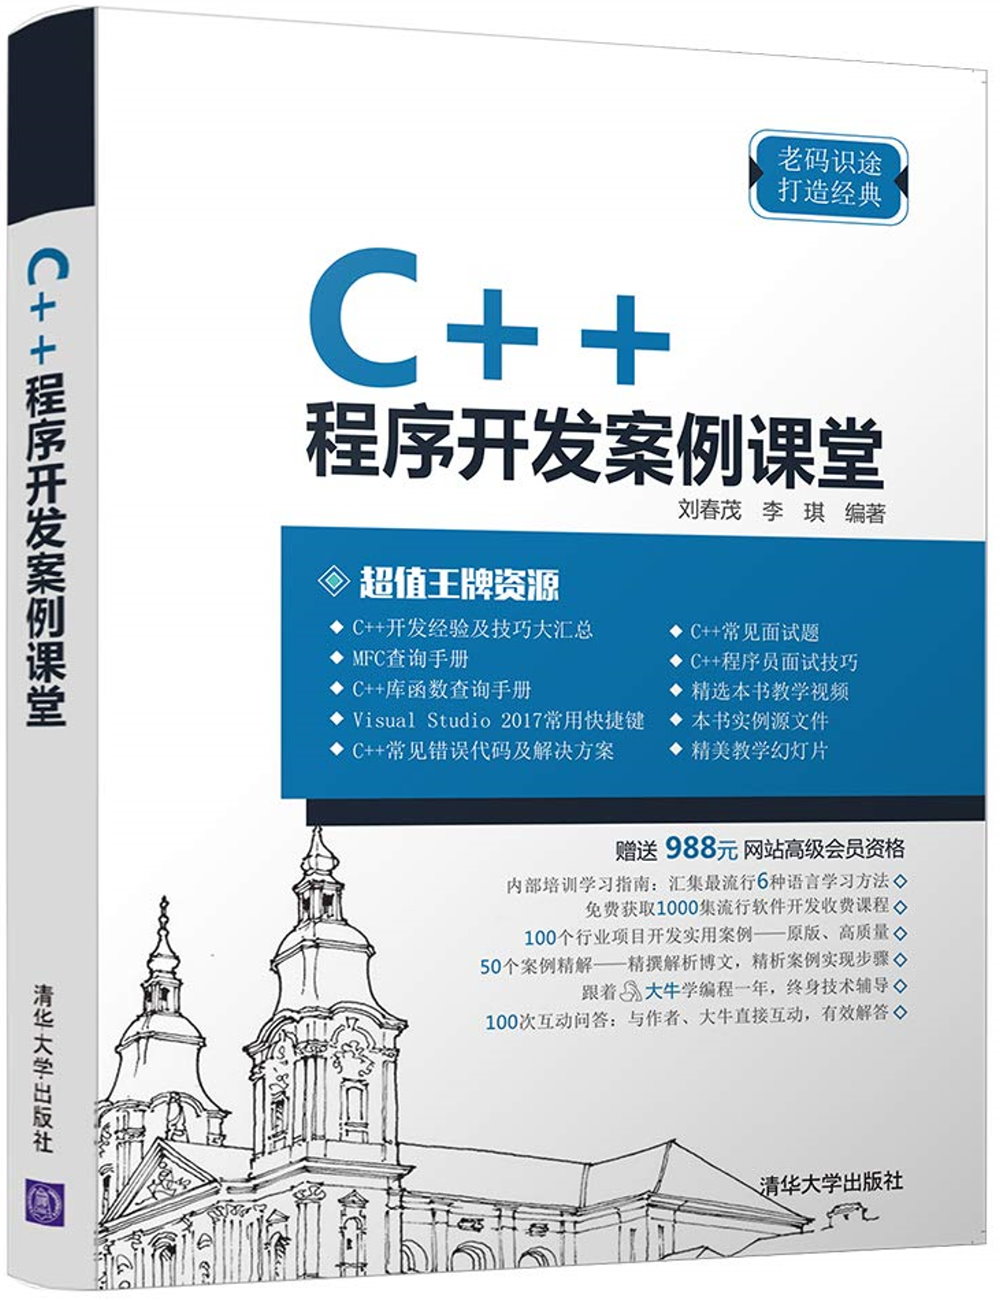 C++程序開發案例課堂